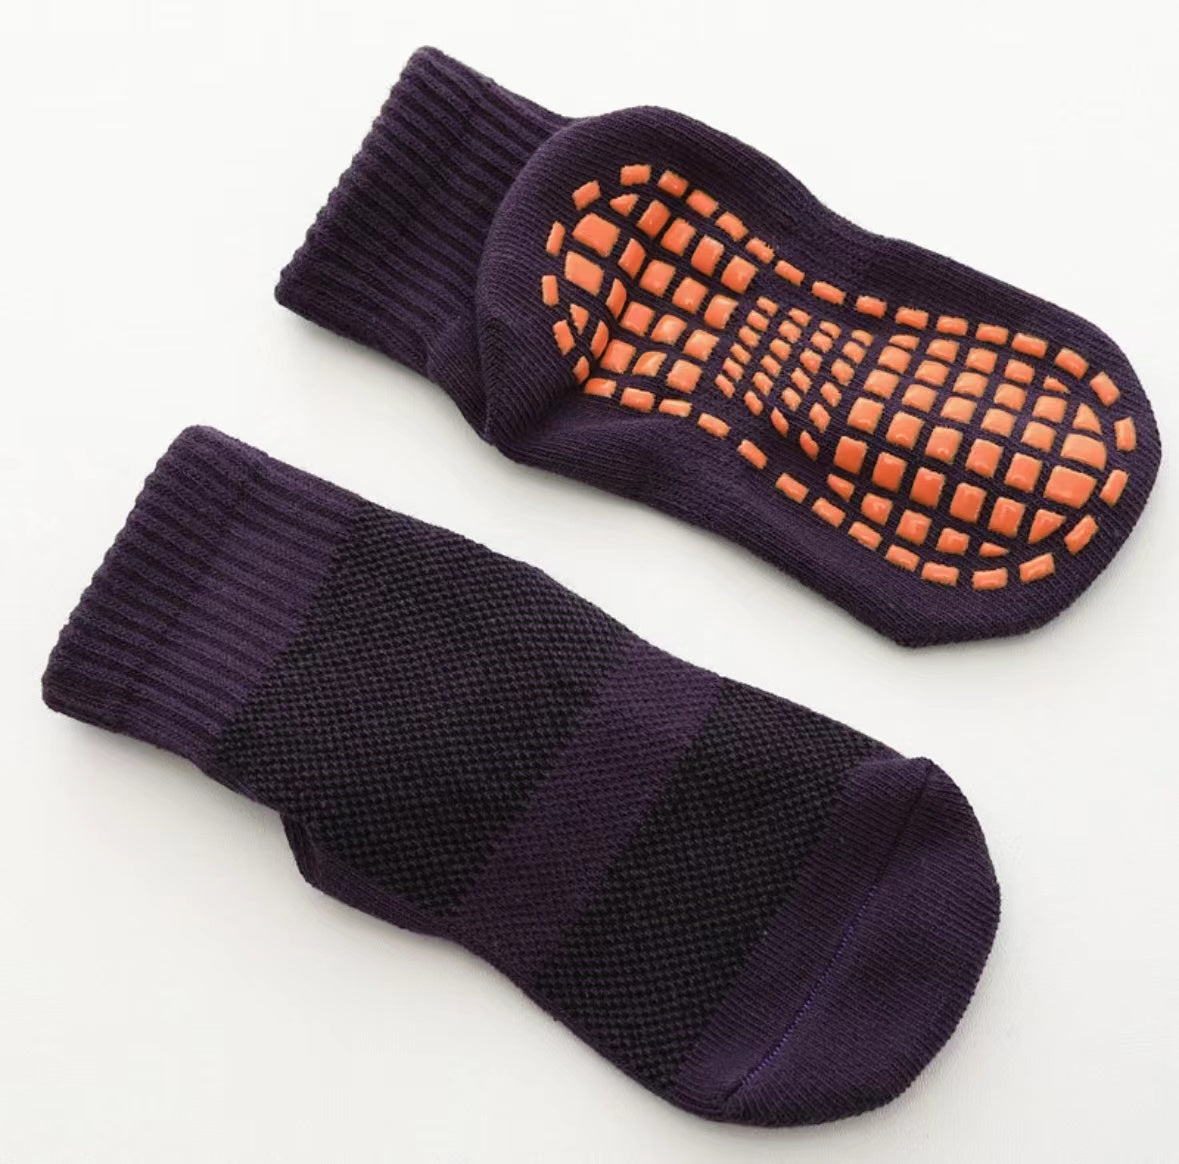 AntiSlip Socks in purple